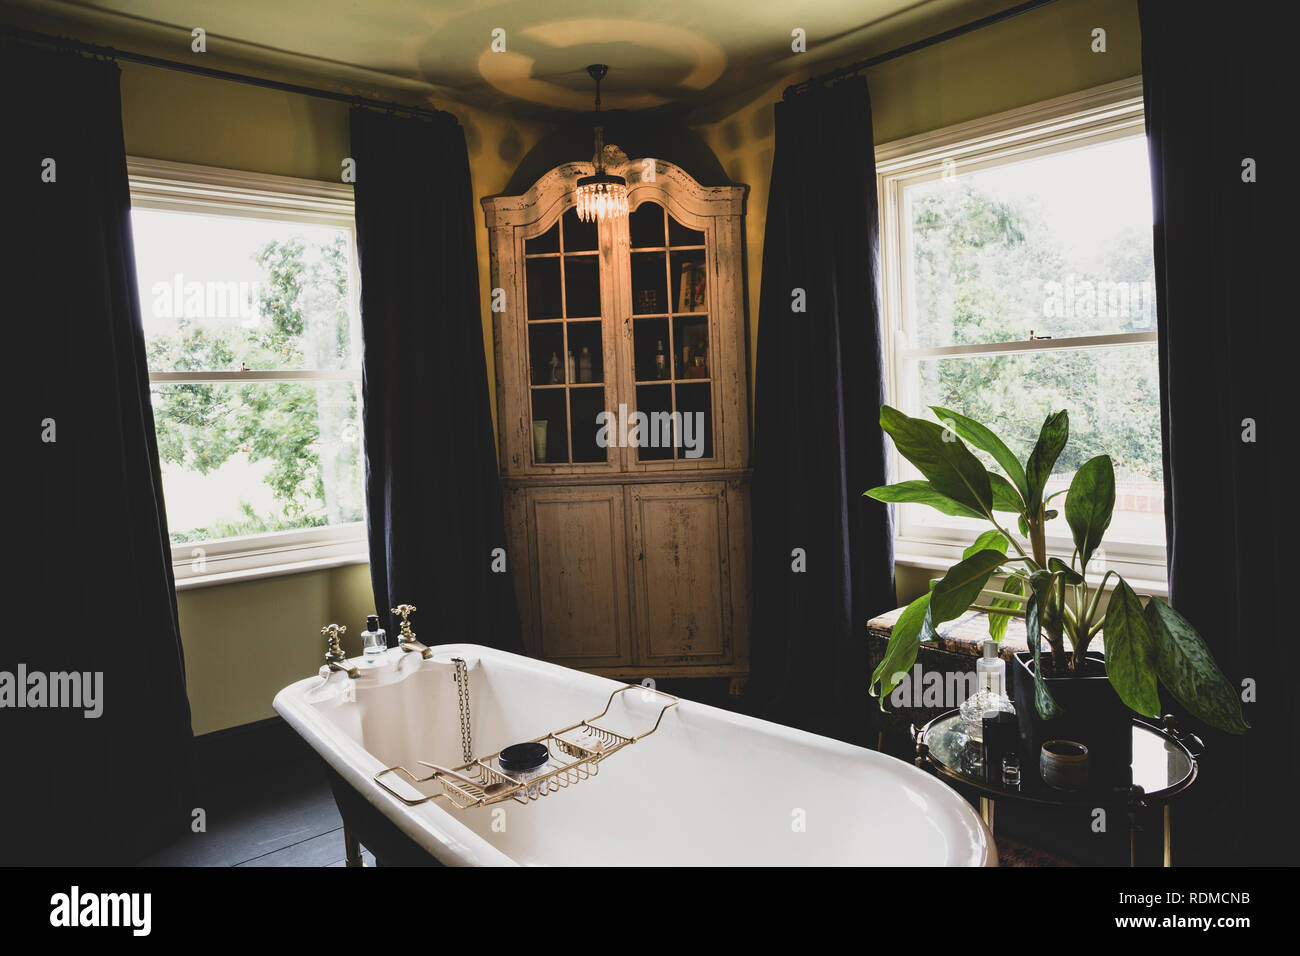 Vue intérieure d'une salle de bains privative avec meuble d'angle en bois entre les fenêtres à guillotine, douche avec baignoire laiton caddy. Banque D'Images